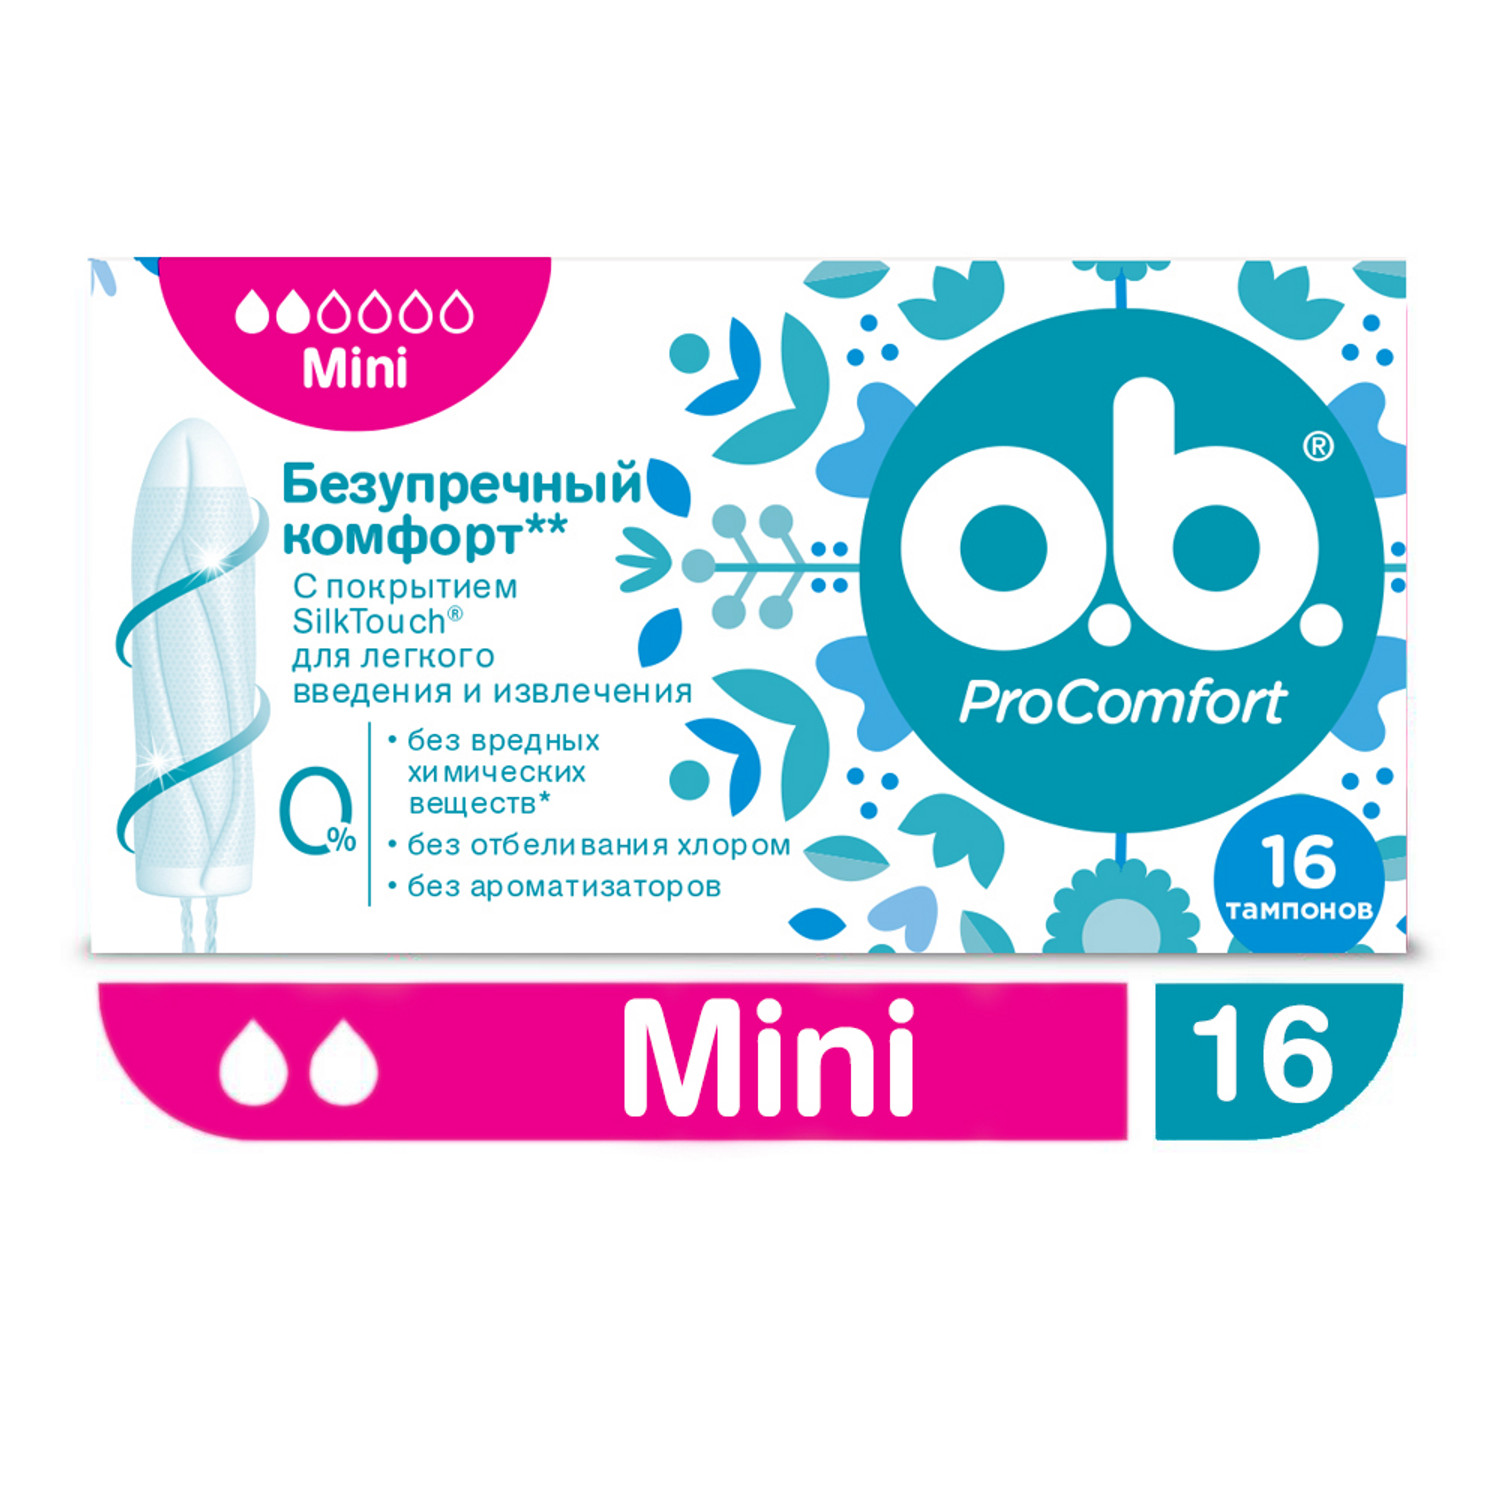 Женские тампоны в Барнауле — купите недорого по цене от рублей в интернет аптеке AltaiMag